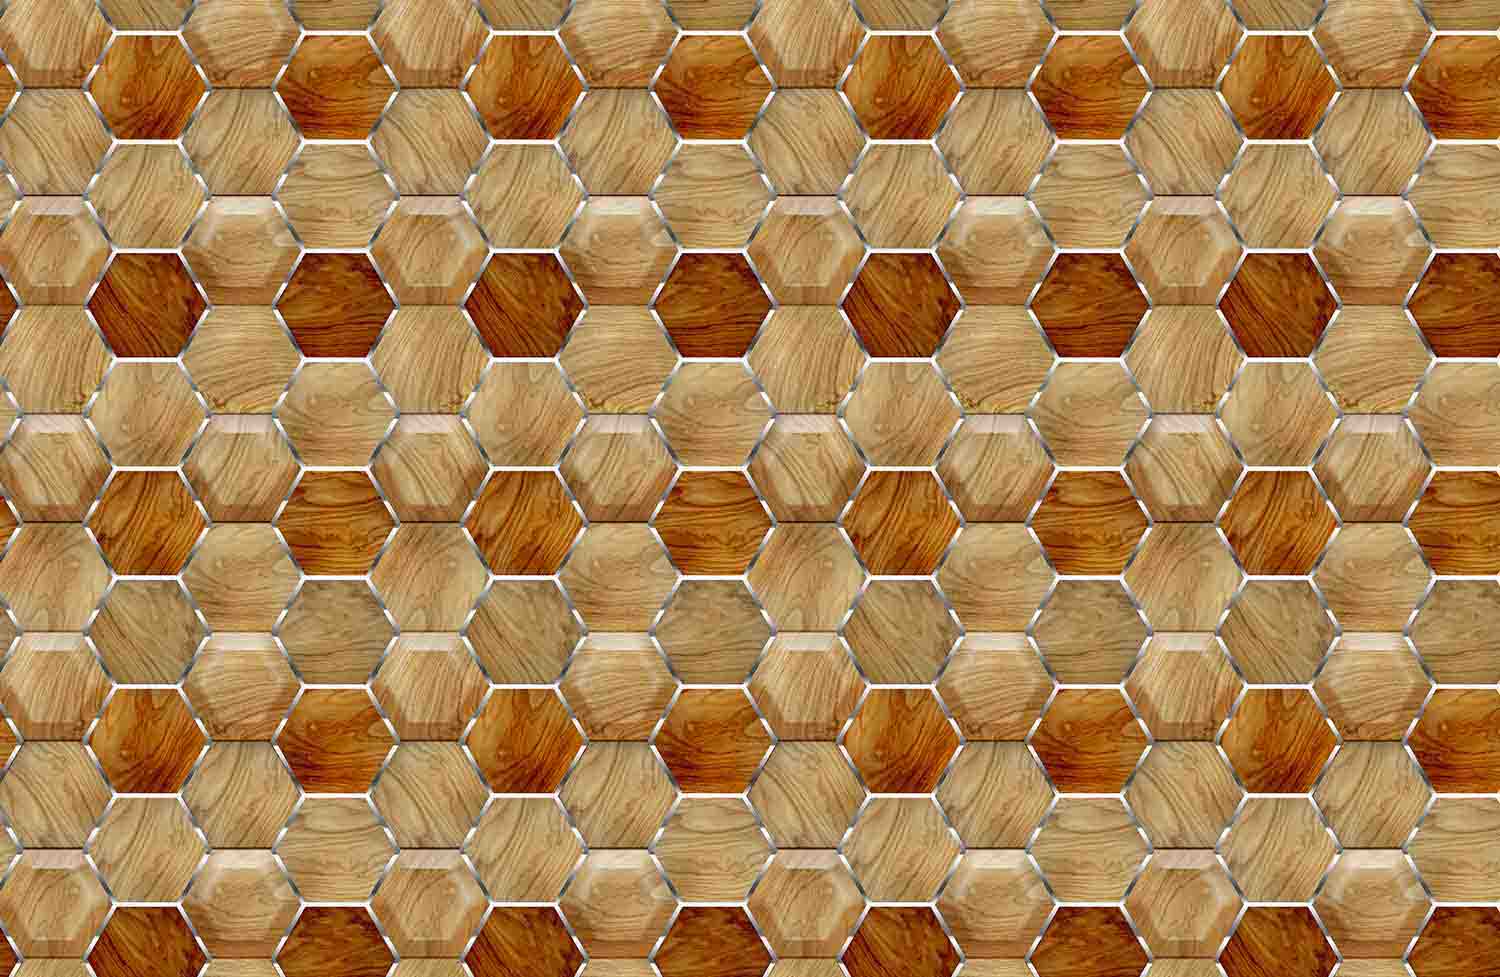 Wodden Honeycombs